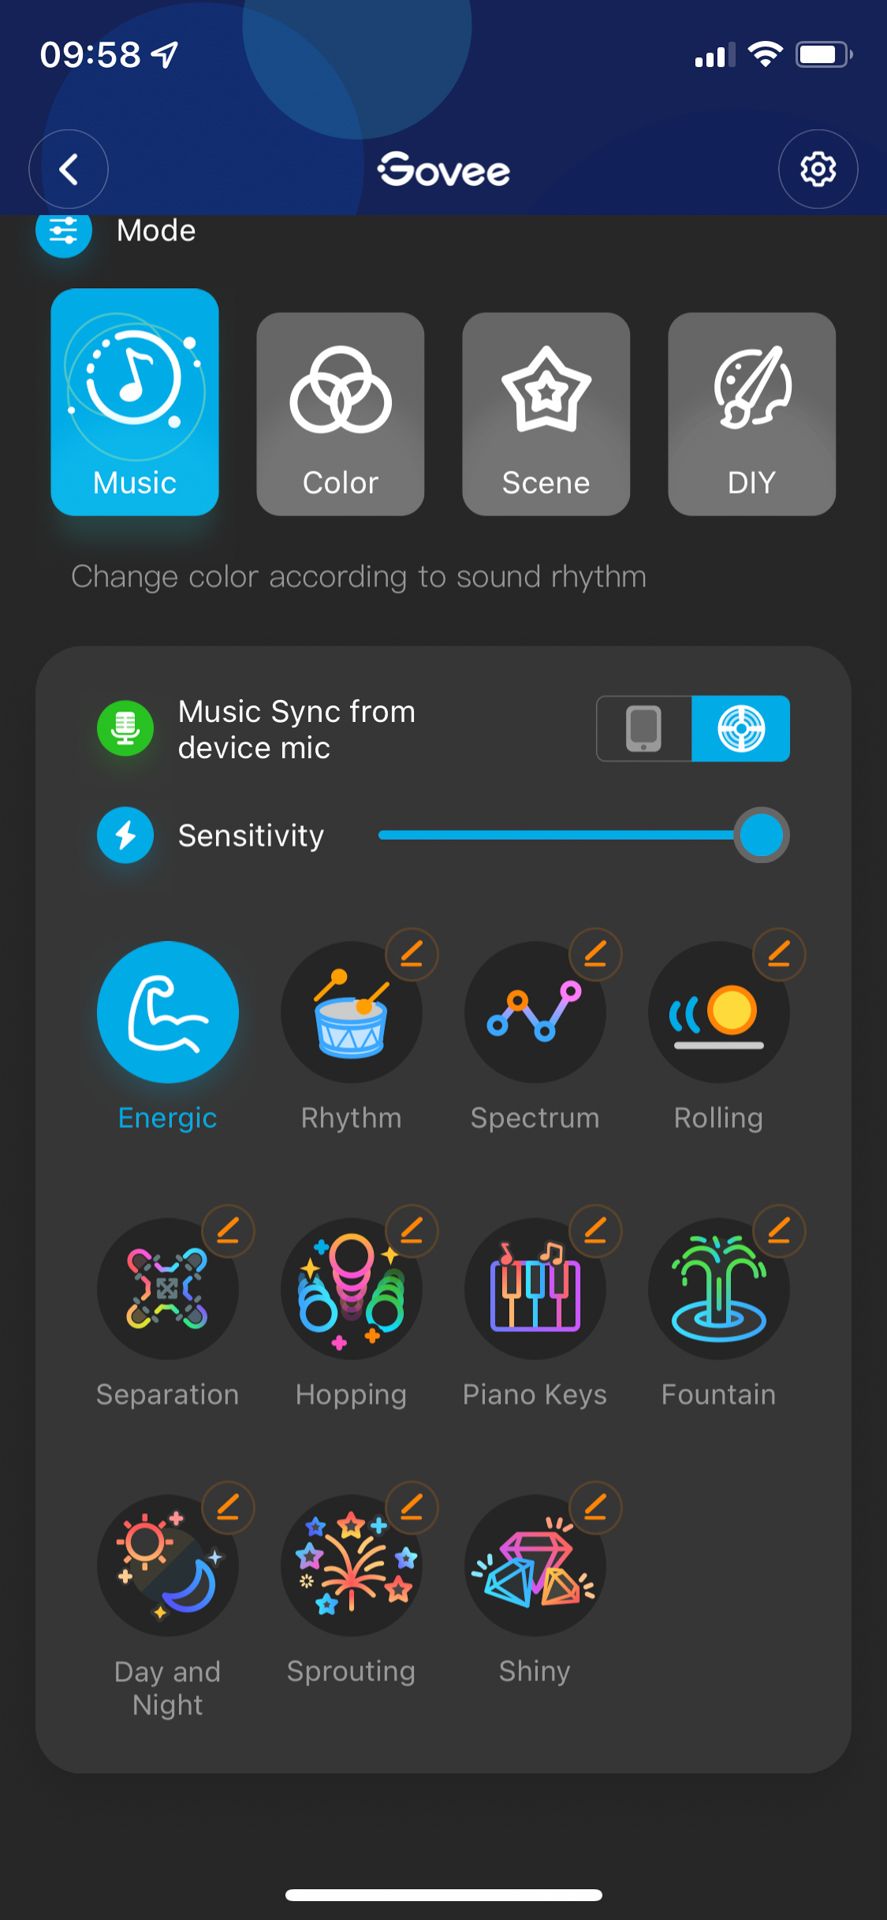 govee app - screenshots - scenes music